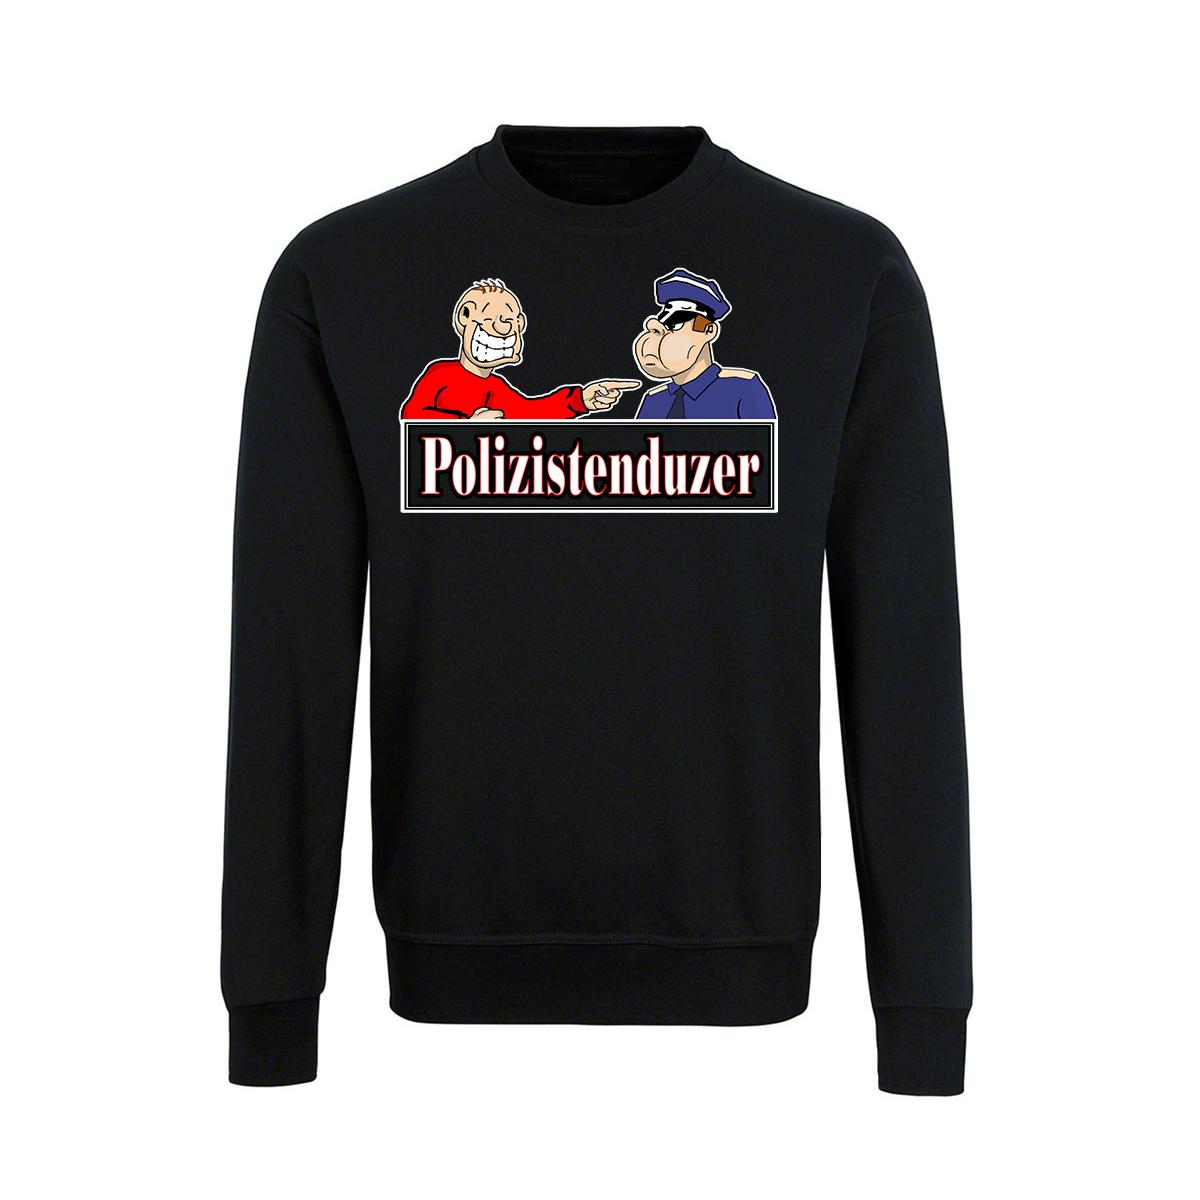 Polizistenduzer - -Männer Pullover - schwarz